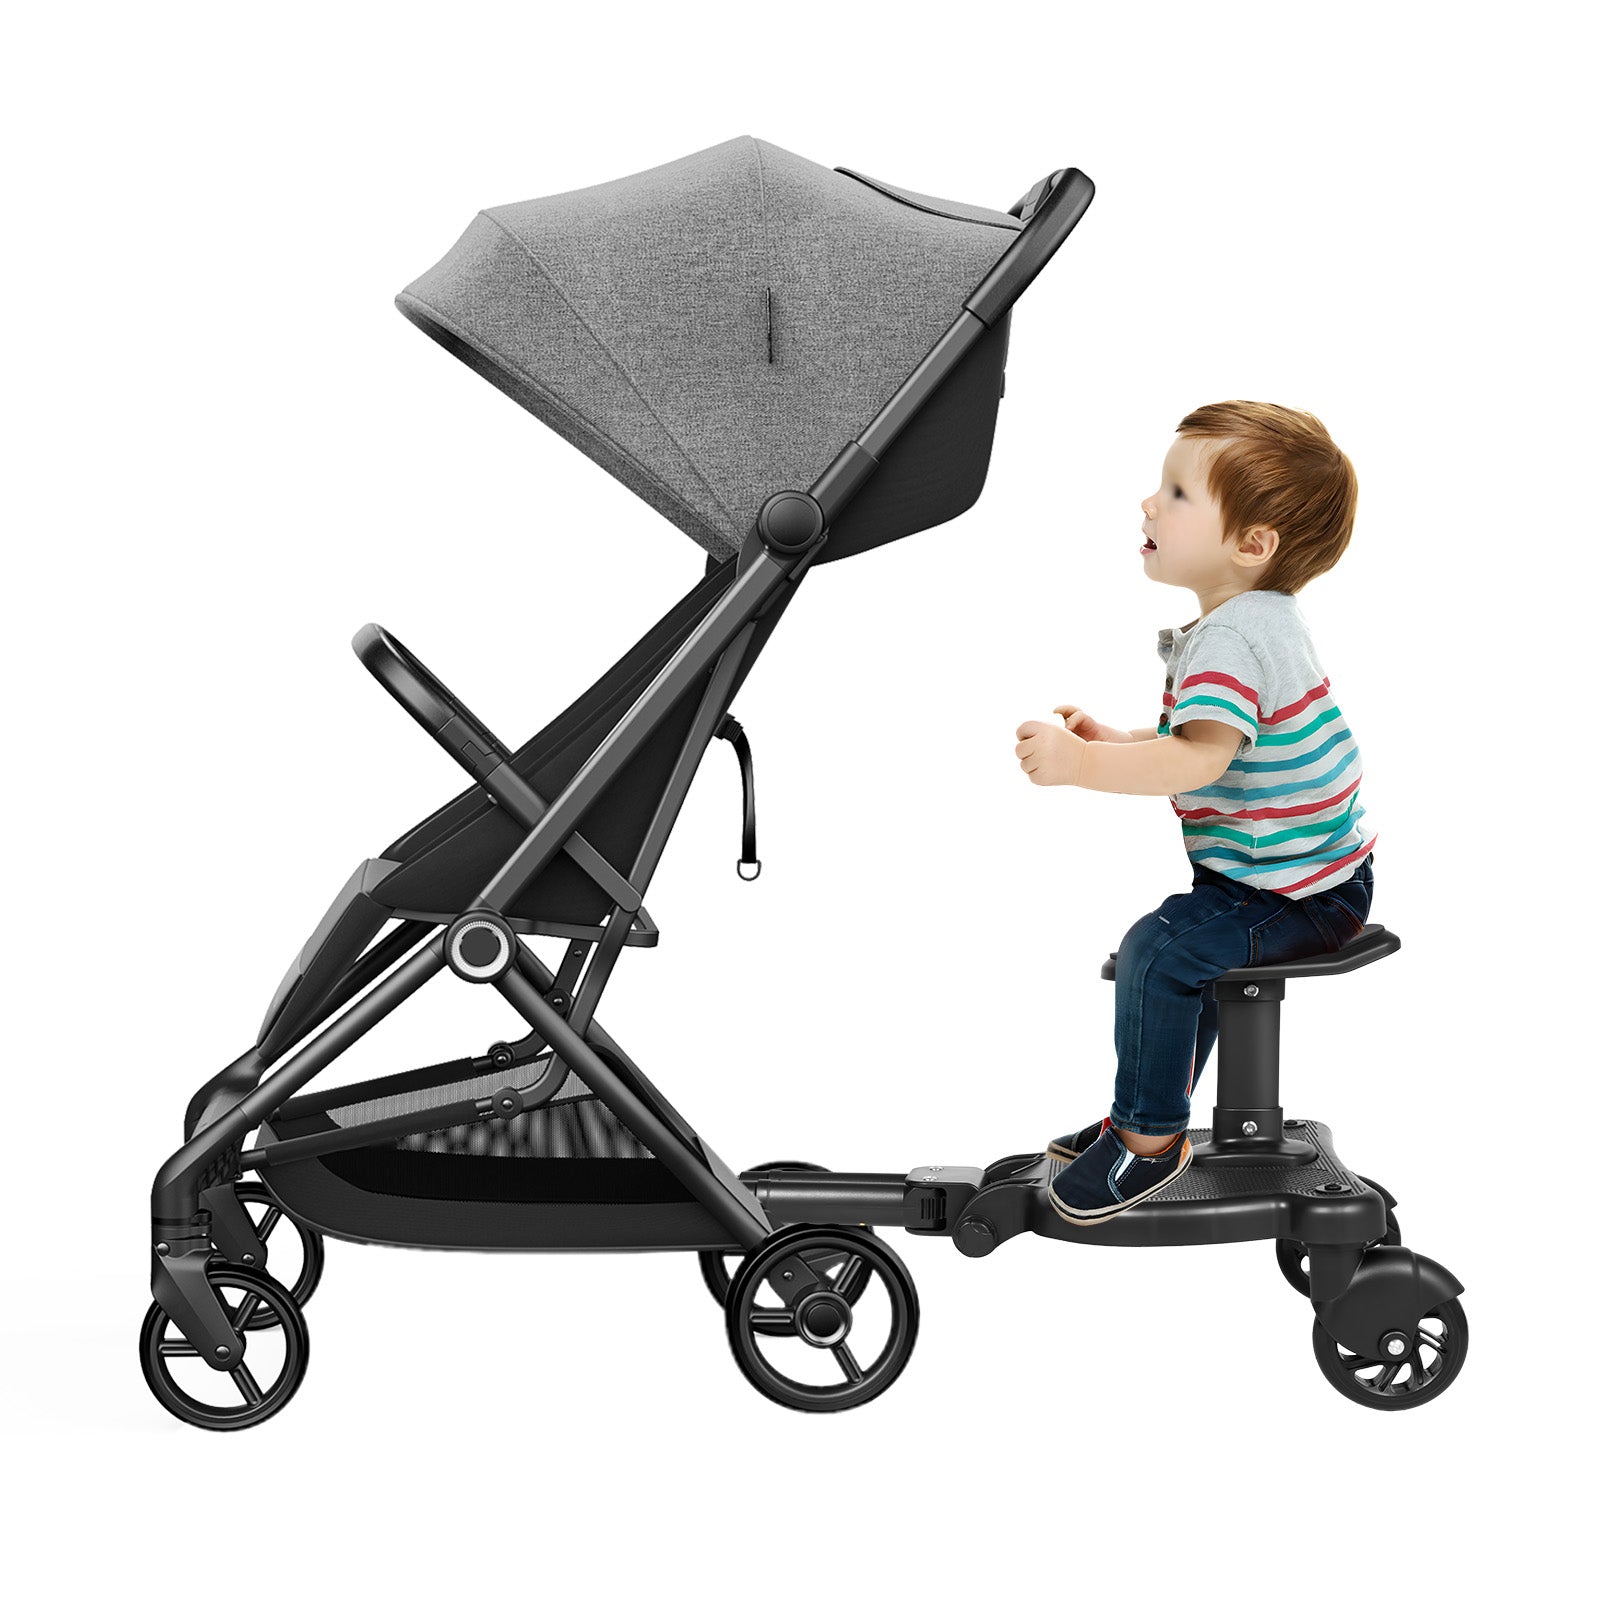 Tavoletta per passeggino per bambini, con supporto e fissaggio, ruote pieghevoli a 360 gradi, sedile rimovibile e assemblato